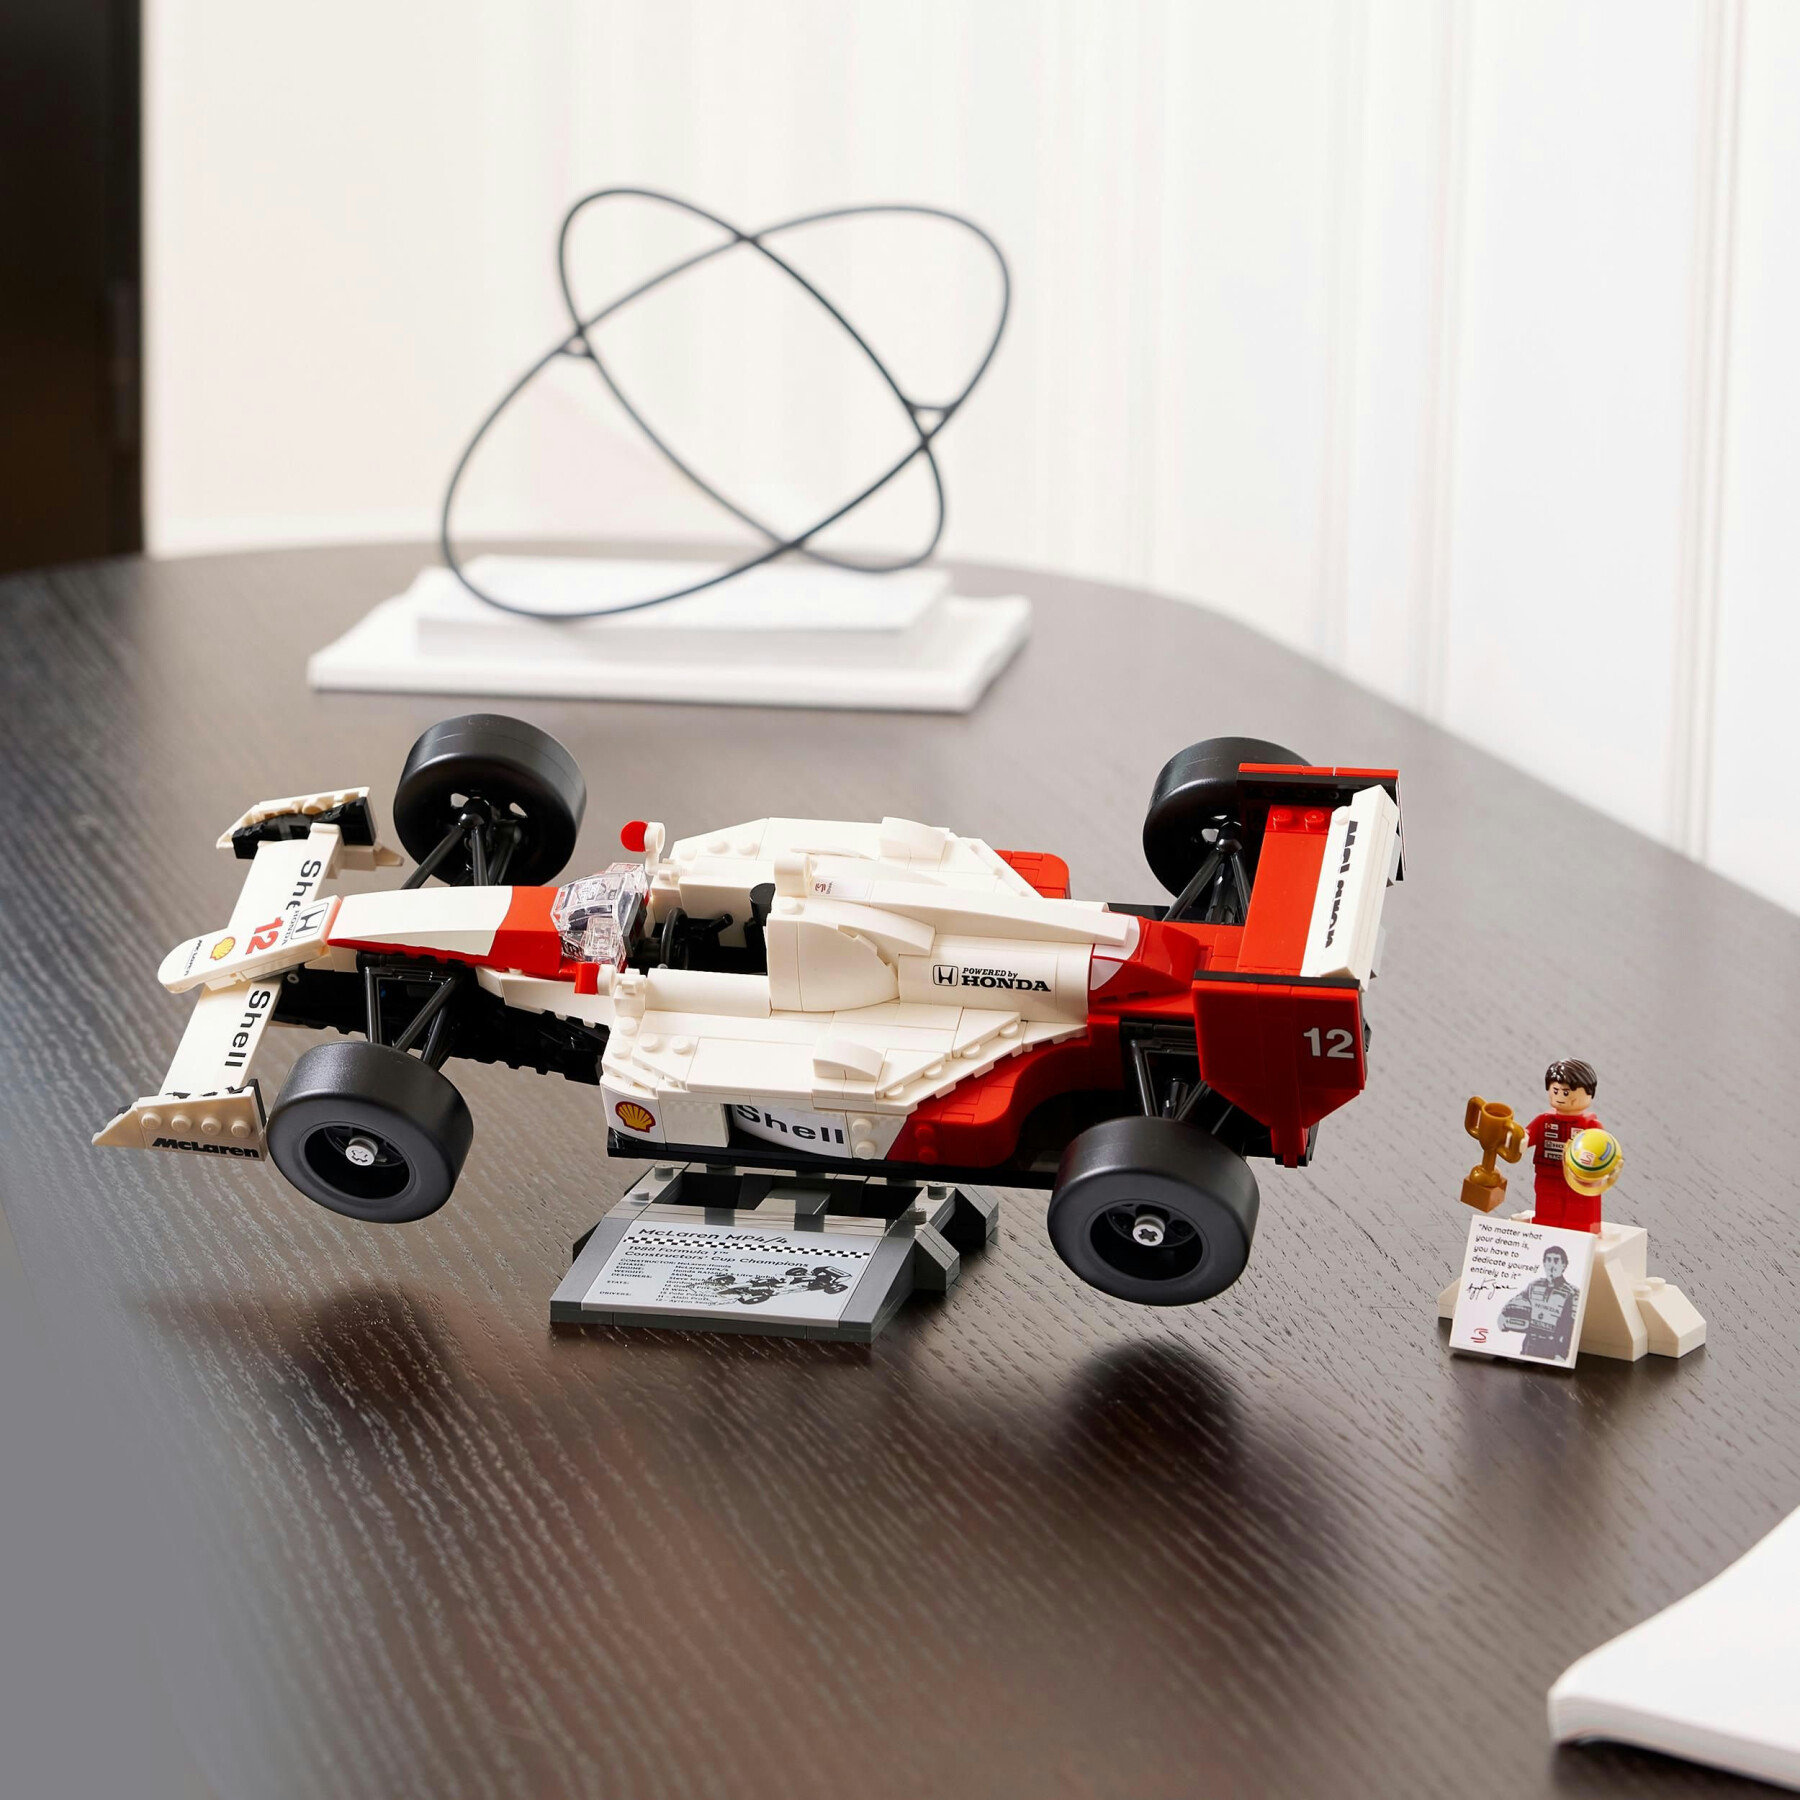 Lego icons 10330 mclaren mp4/4 e ayrton senna, modellino da costruire di auto da corsa f1 con minifigure, regalo per adulti - Lego, LEGO ICONS